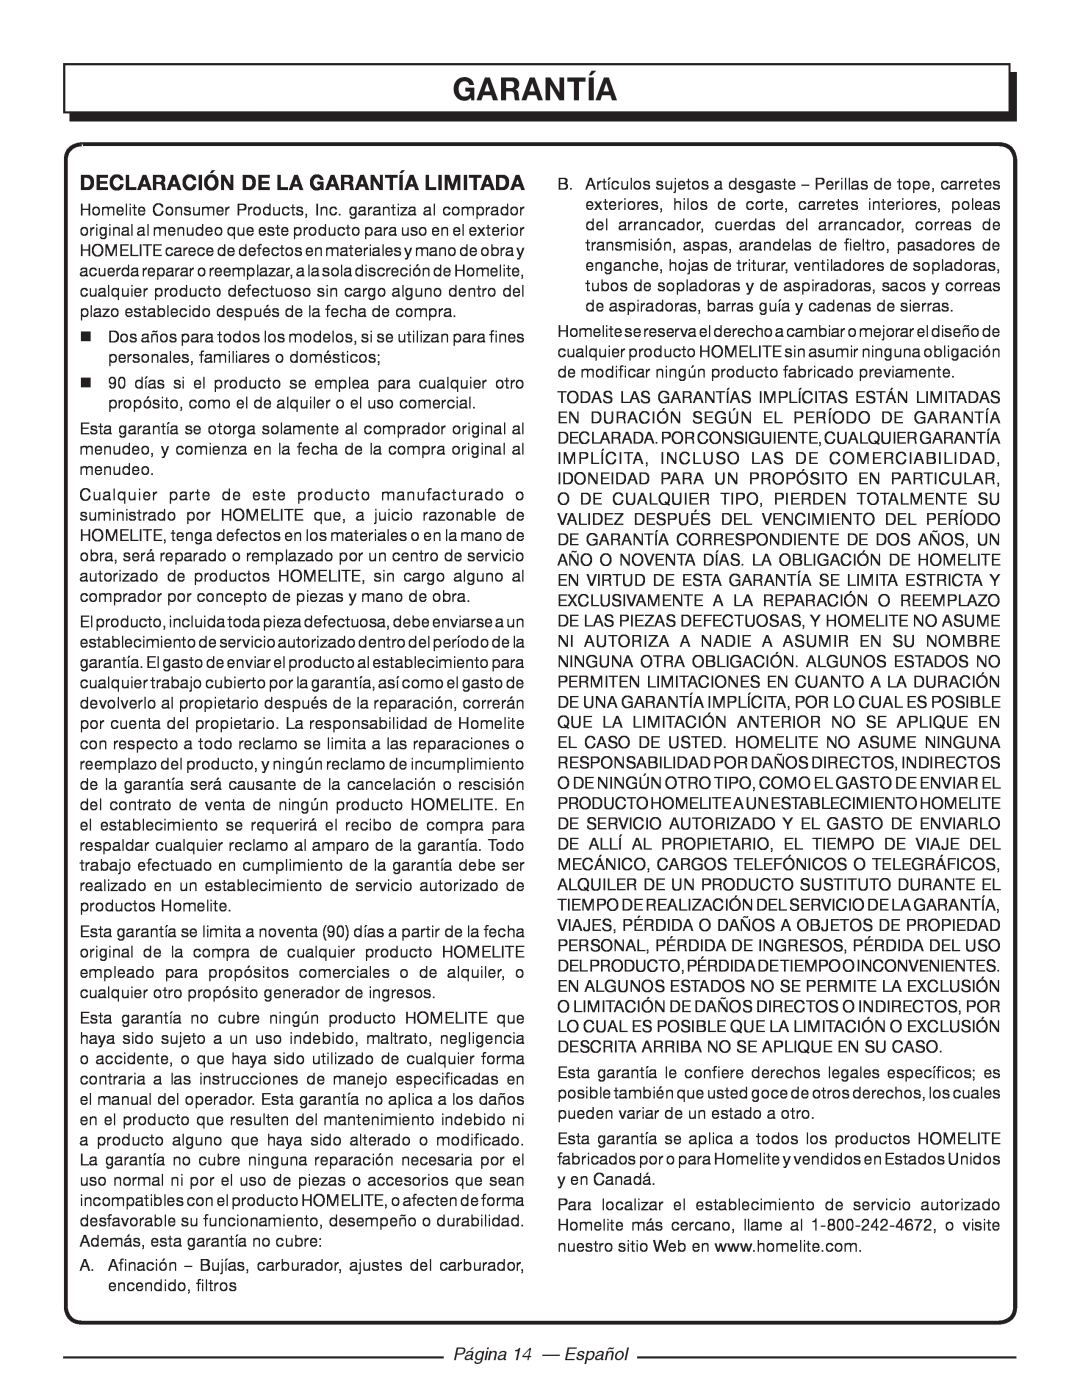 Homelite UT44171 manuel dutilisation garantía, Declaración De La Garantía Limitada, Página 14 - Español 